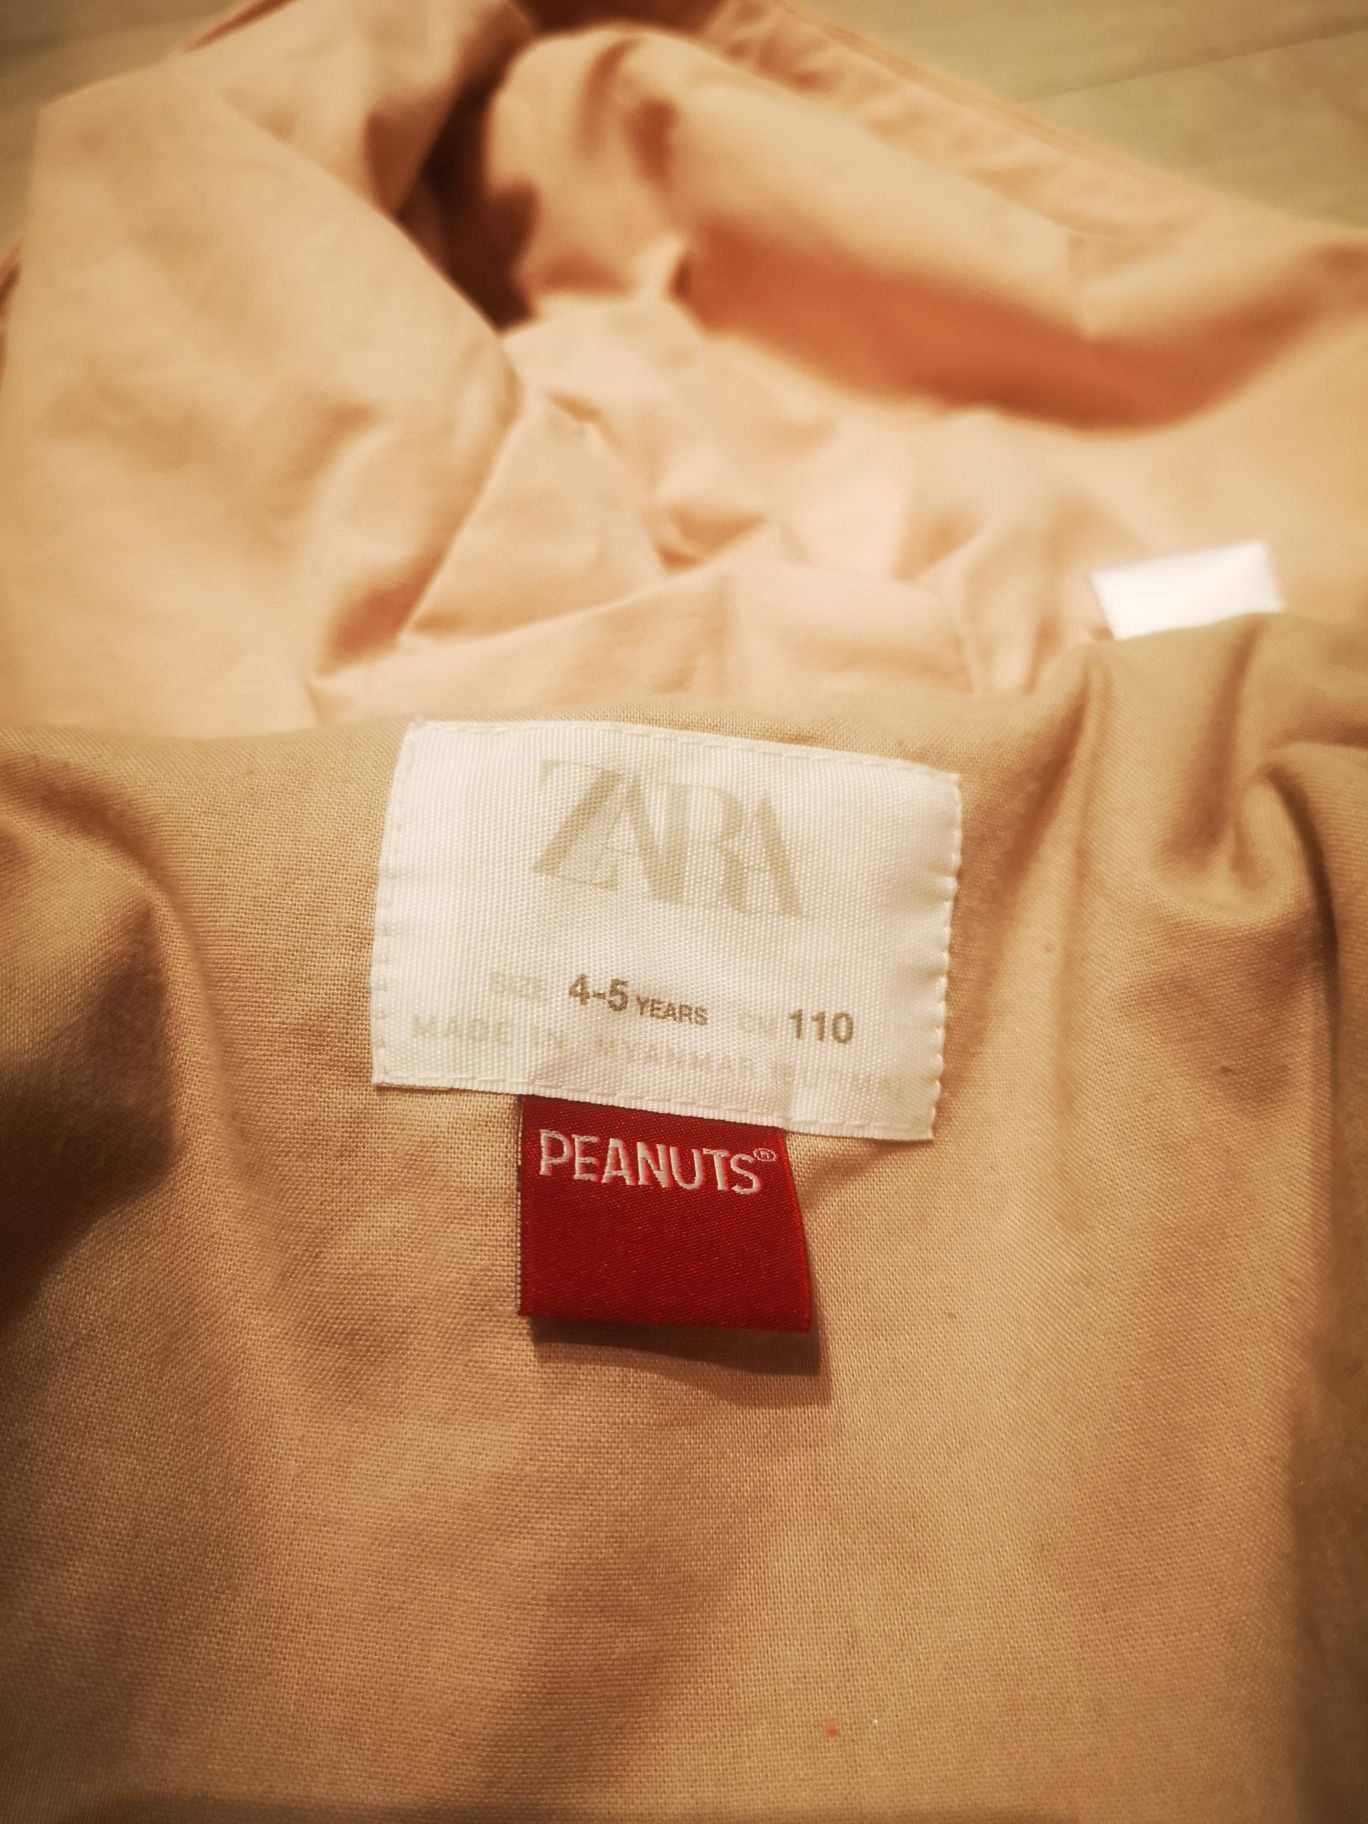 Kurtka przejściowa firmy Zara kolor janso różowy rozmiar 110.